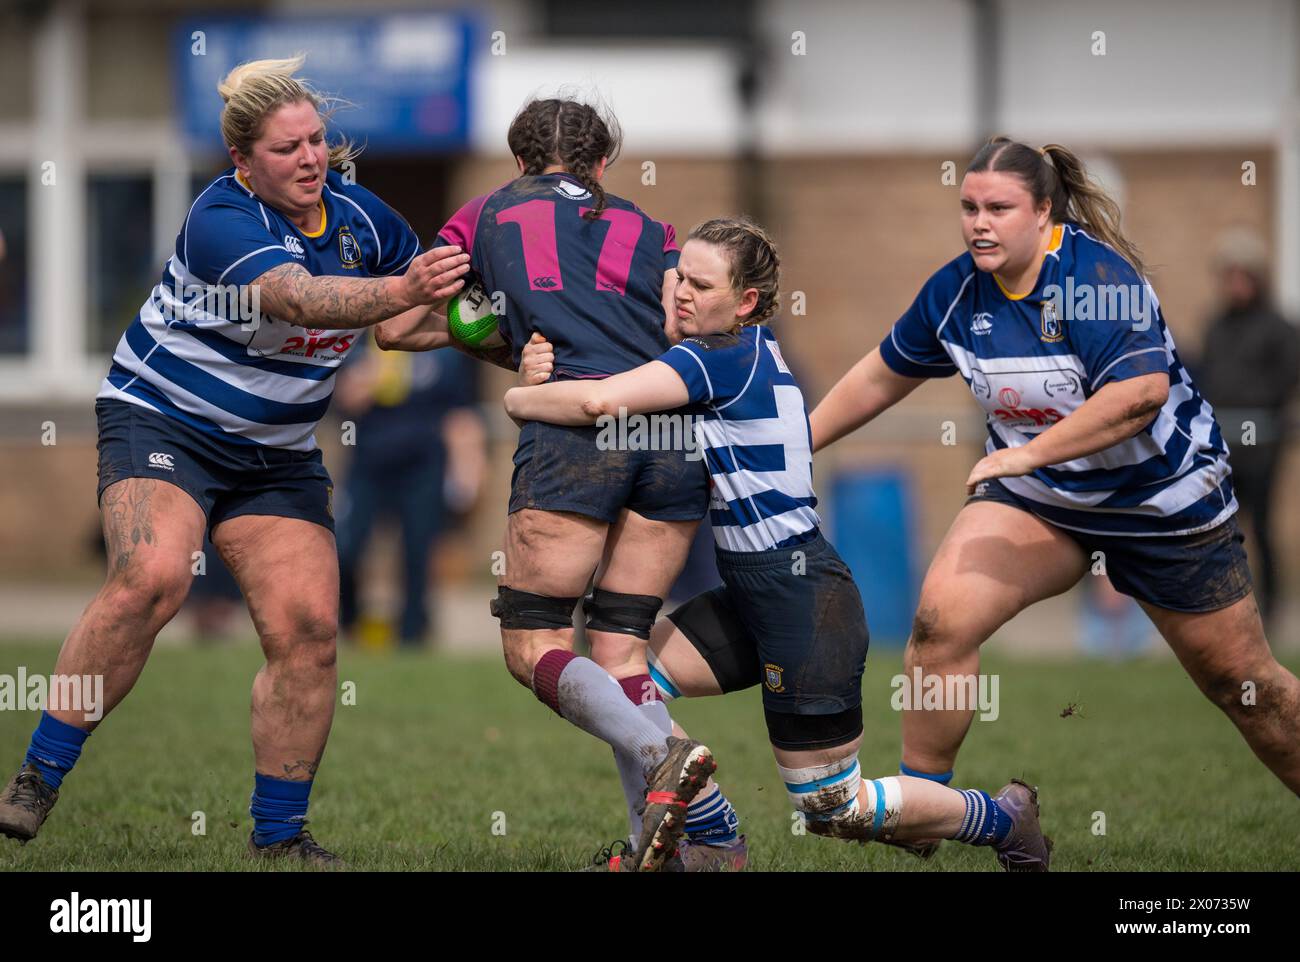 Jeu féminin amateur anglais de rugby à xv. Banque D'Images